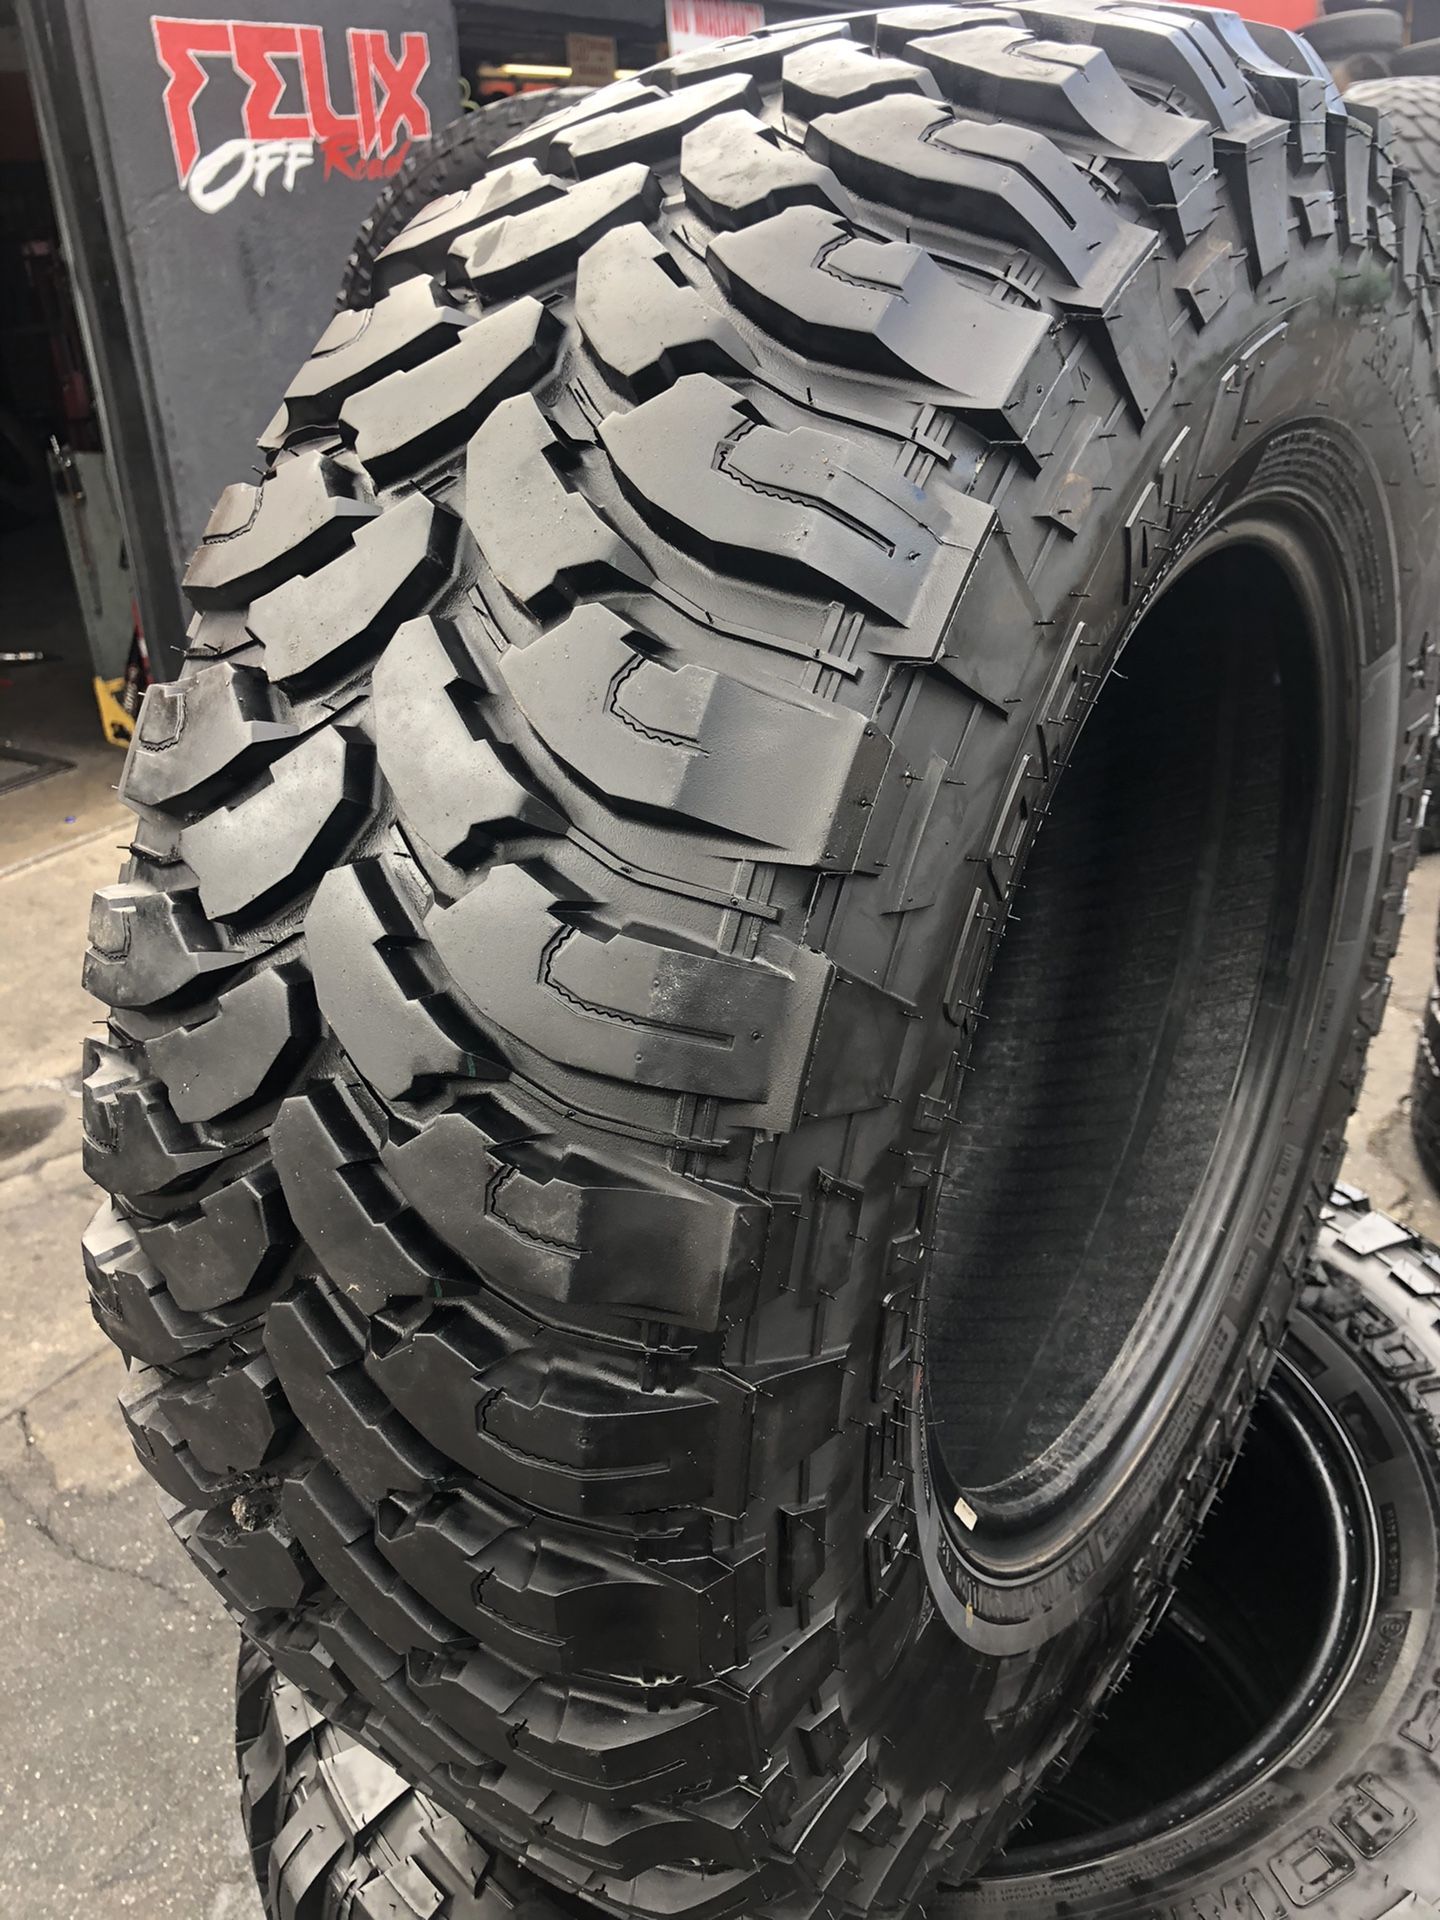 285/70/17 RBP mud terrain tires (4 for $300)